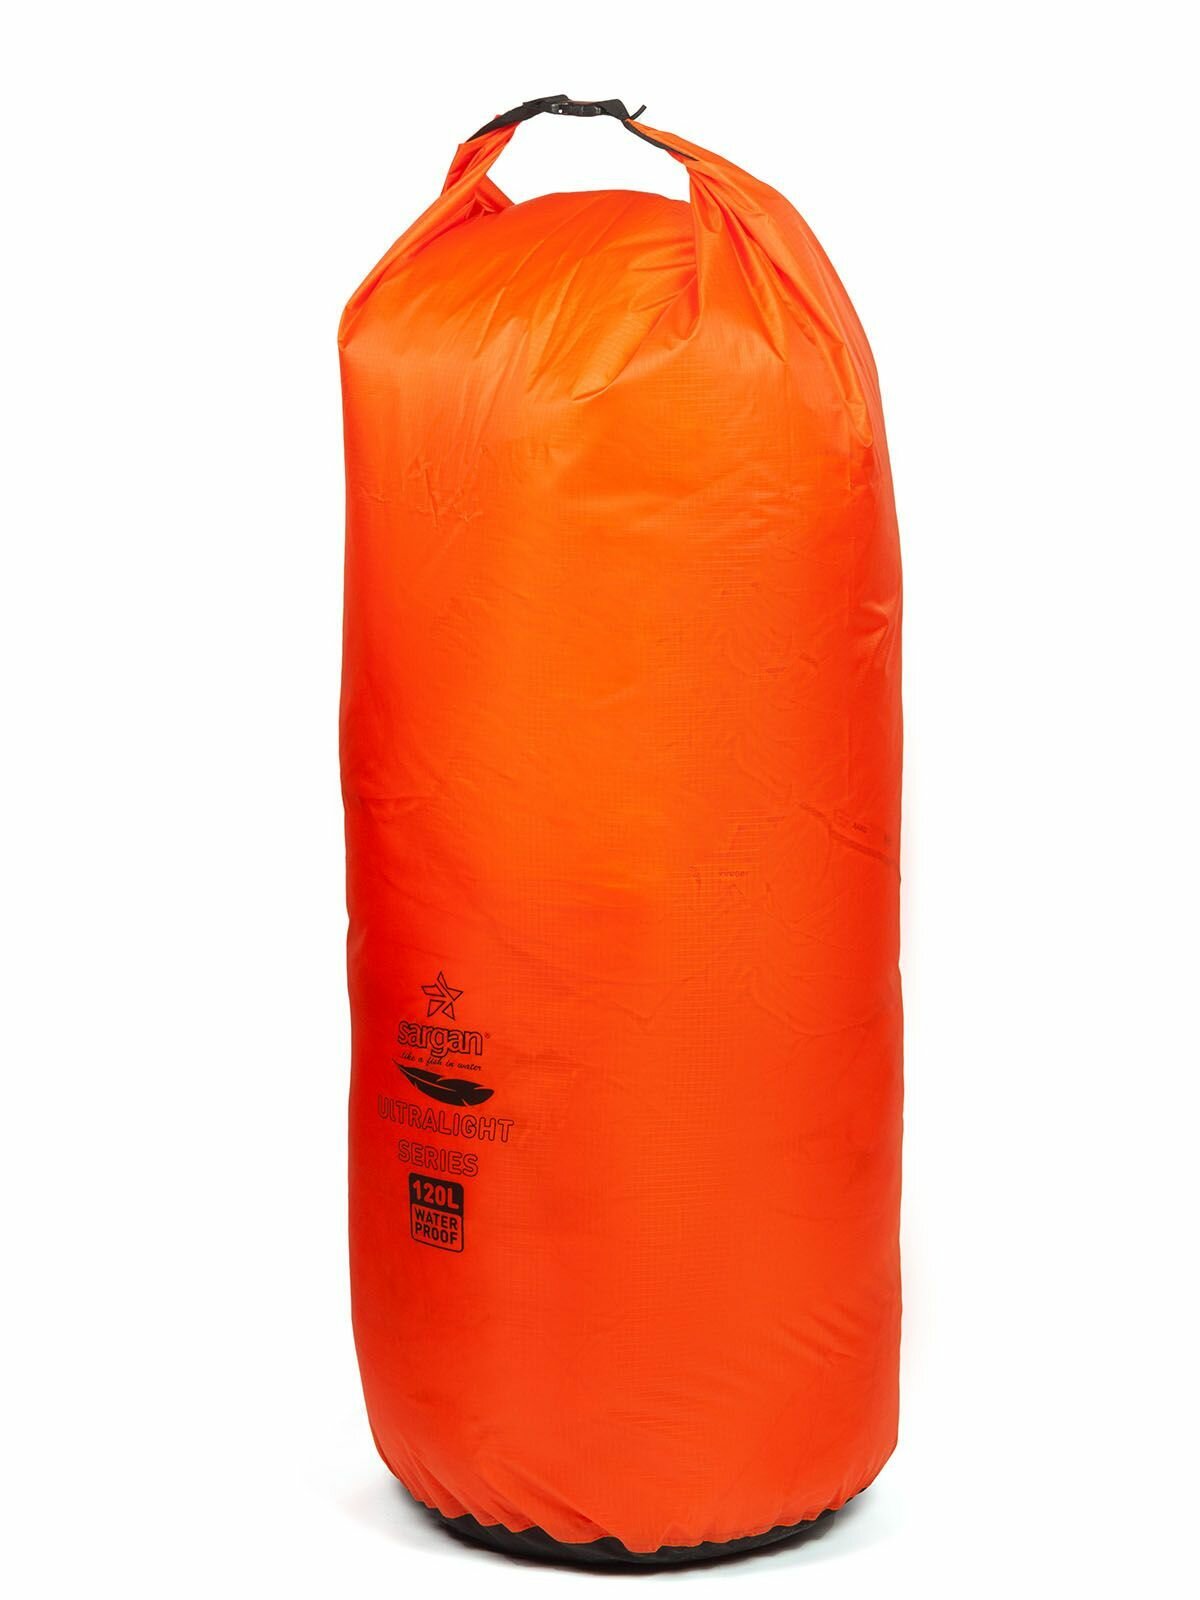 Гермомешок SARGAN "легко" TAFFETA RIPSTOP объем 120 литров оранжевый